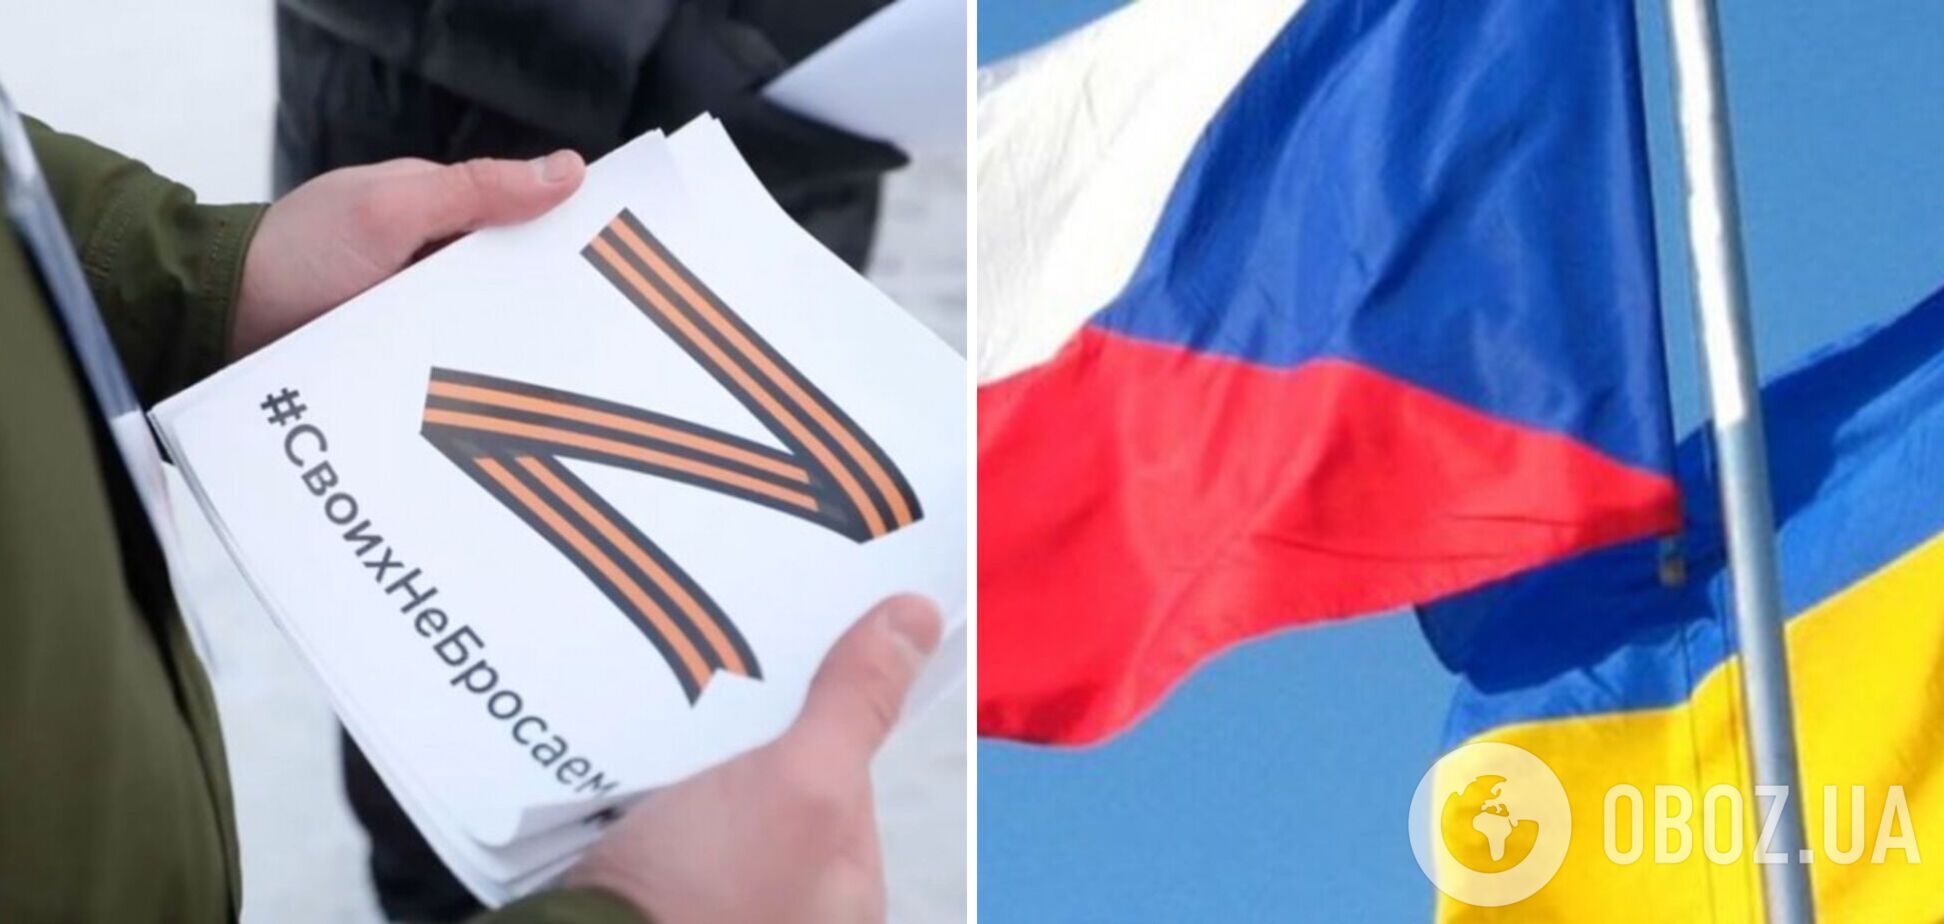 У Чехії заявили, що демонстрацію символу 'Z' можуть прирівняти до демонстрації свастики